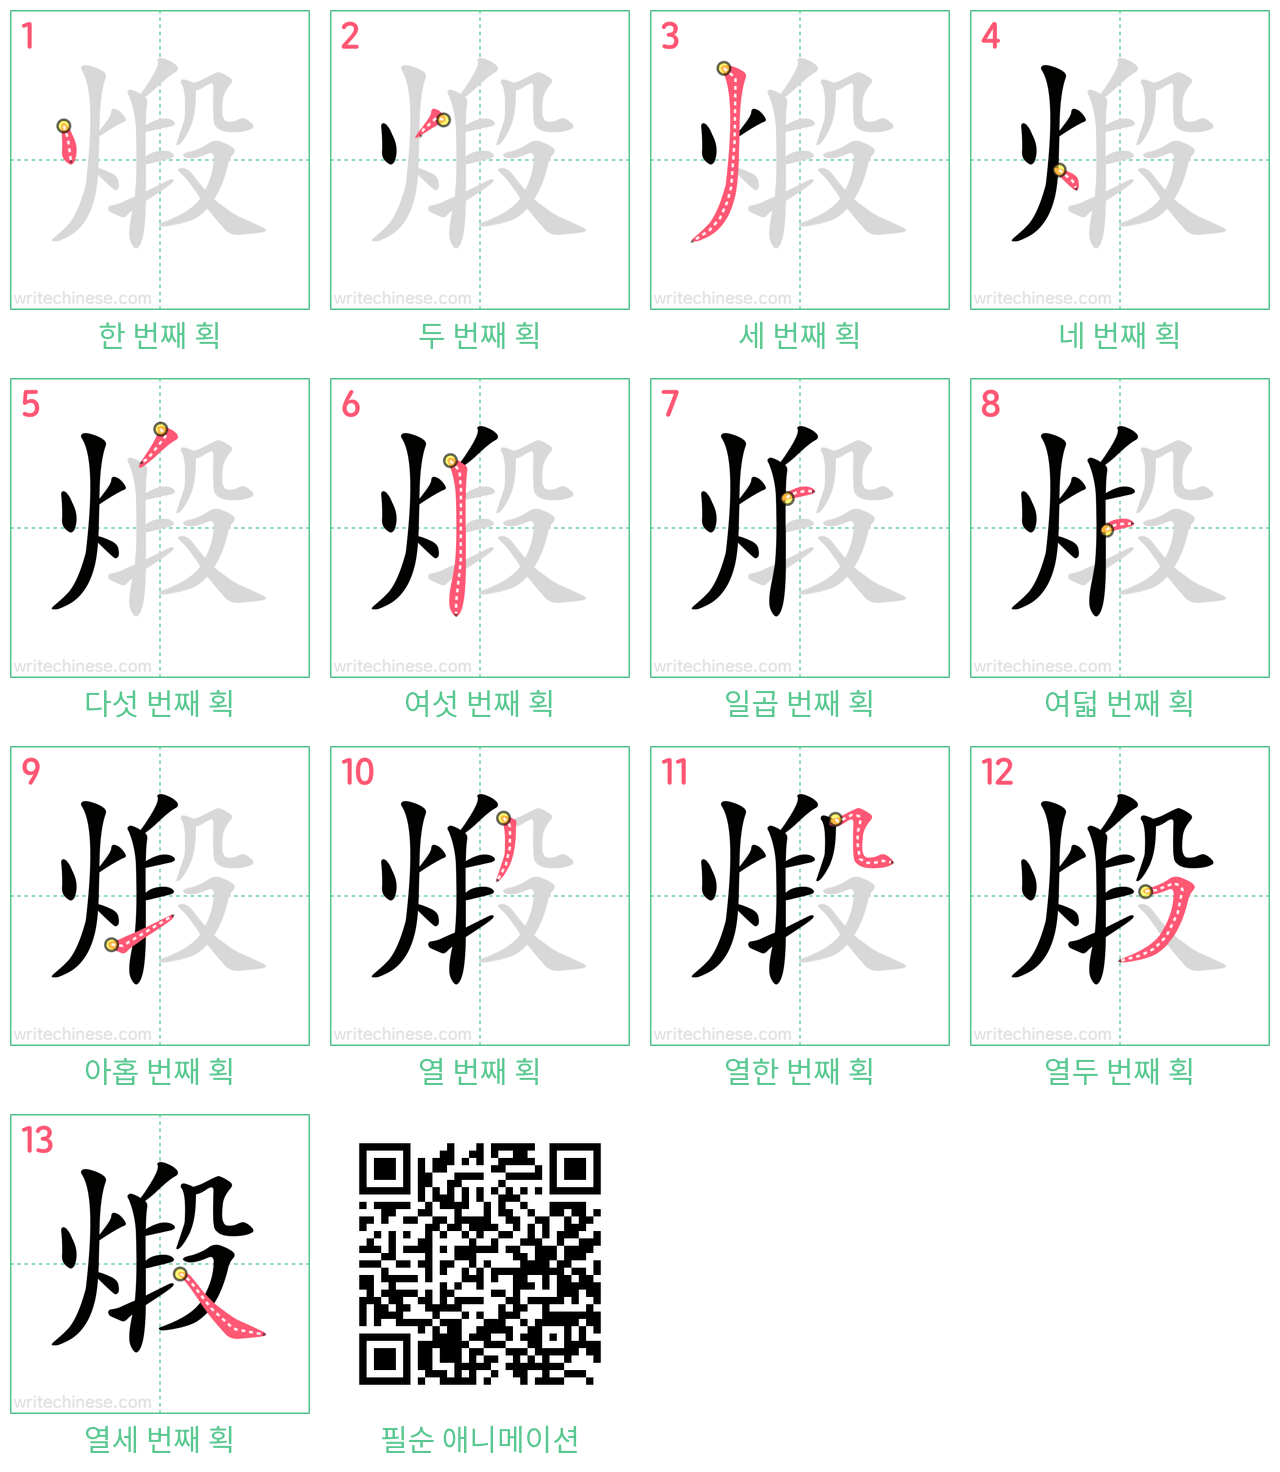 煅 step-by-step stroke order diagrams